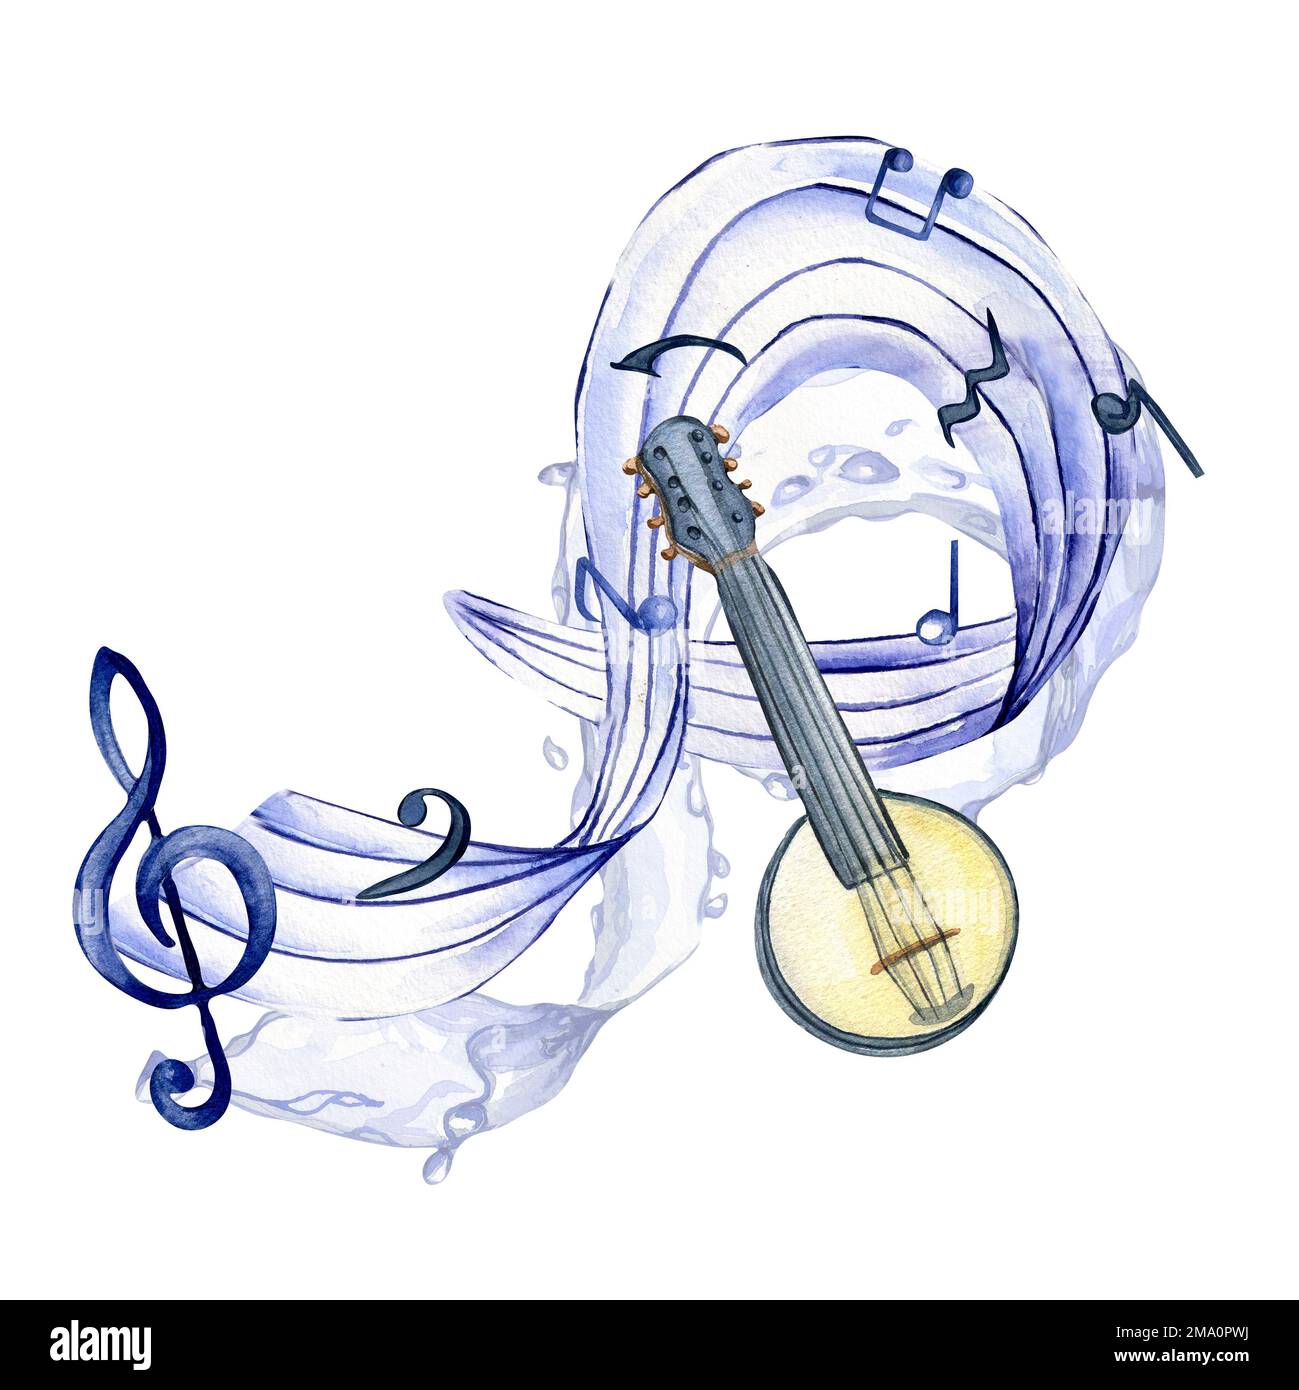 Höhenknoten, musikalische Noten und Banjo-Aquarell-Illustration auf Weiß. Streichinstrumente, handgezeichnet mit Mandolinen. Design für Party-Flyer, Concer Stockfoto